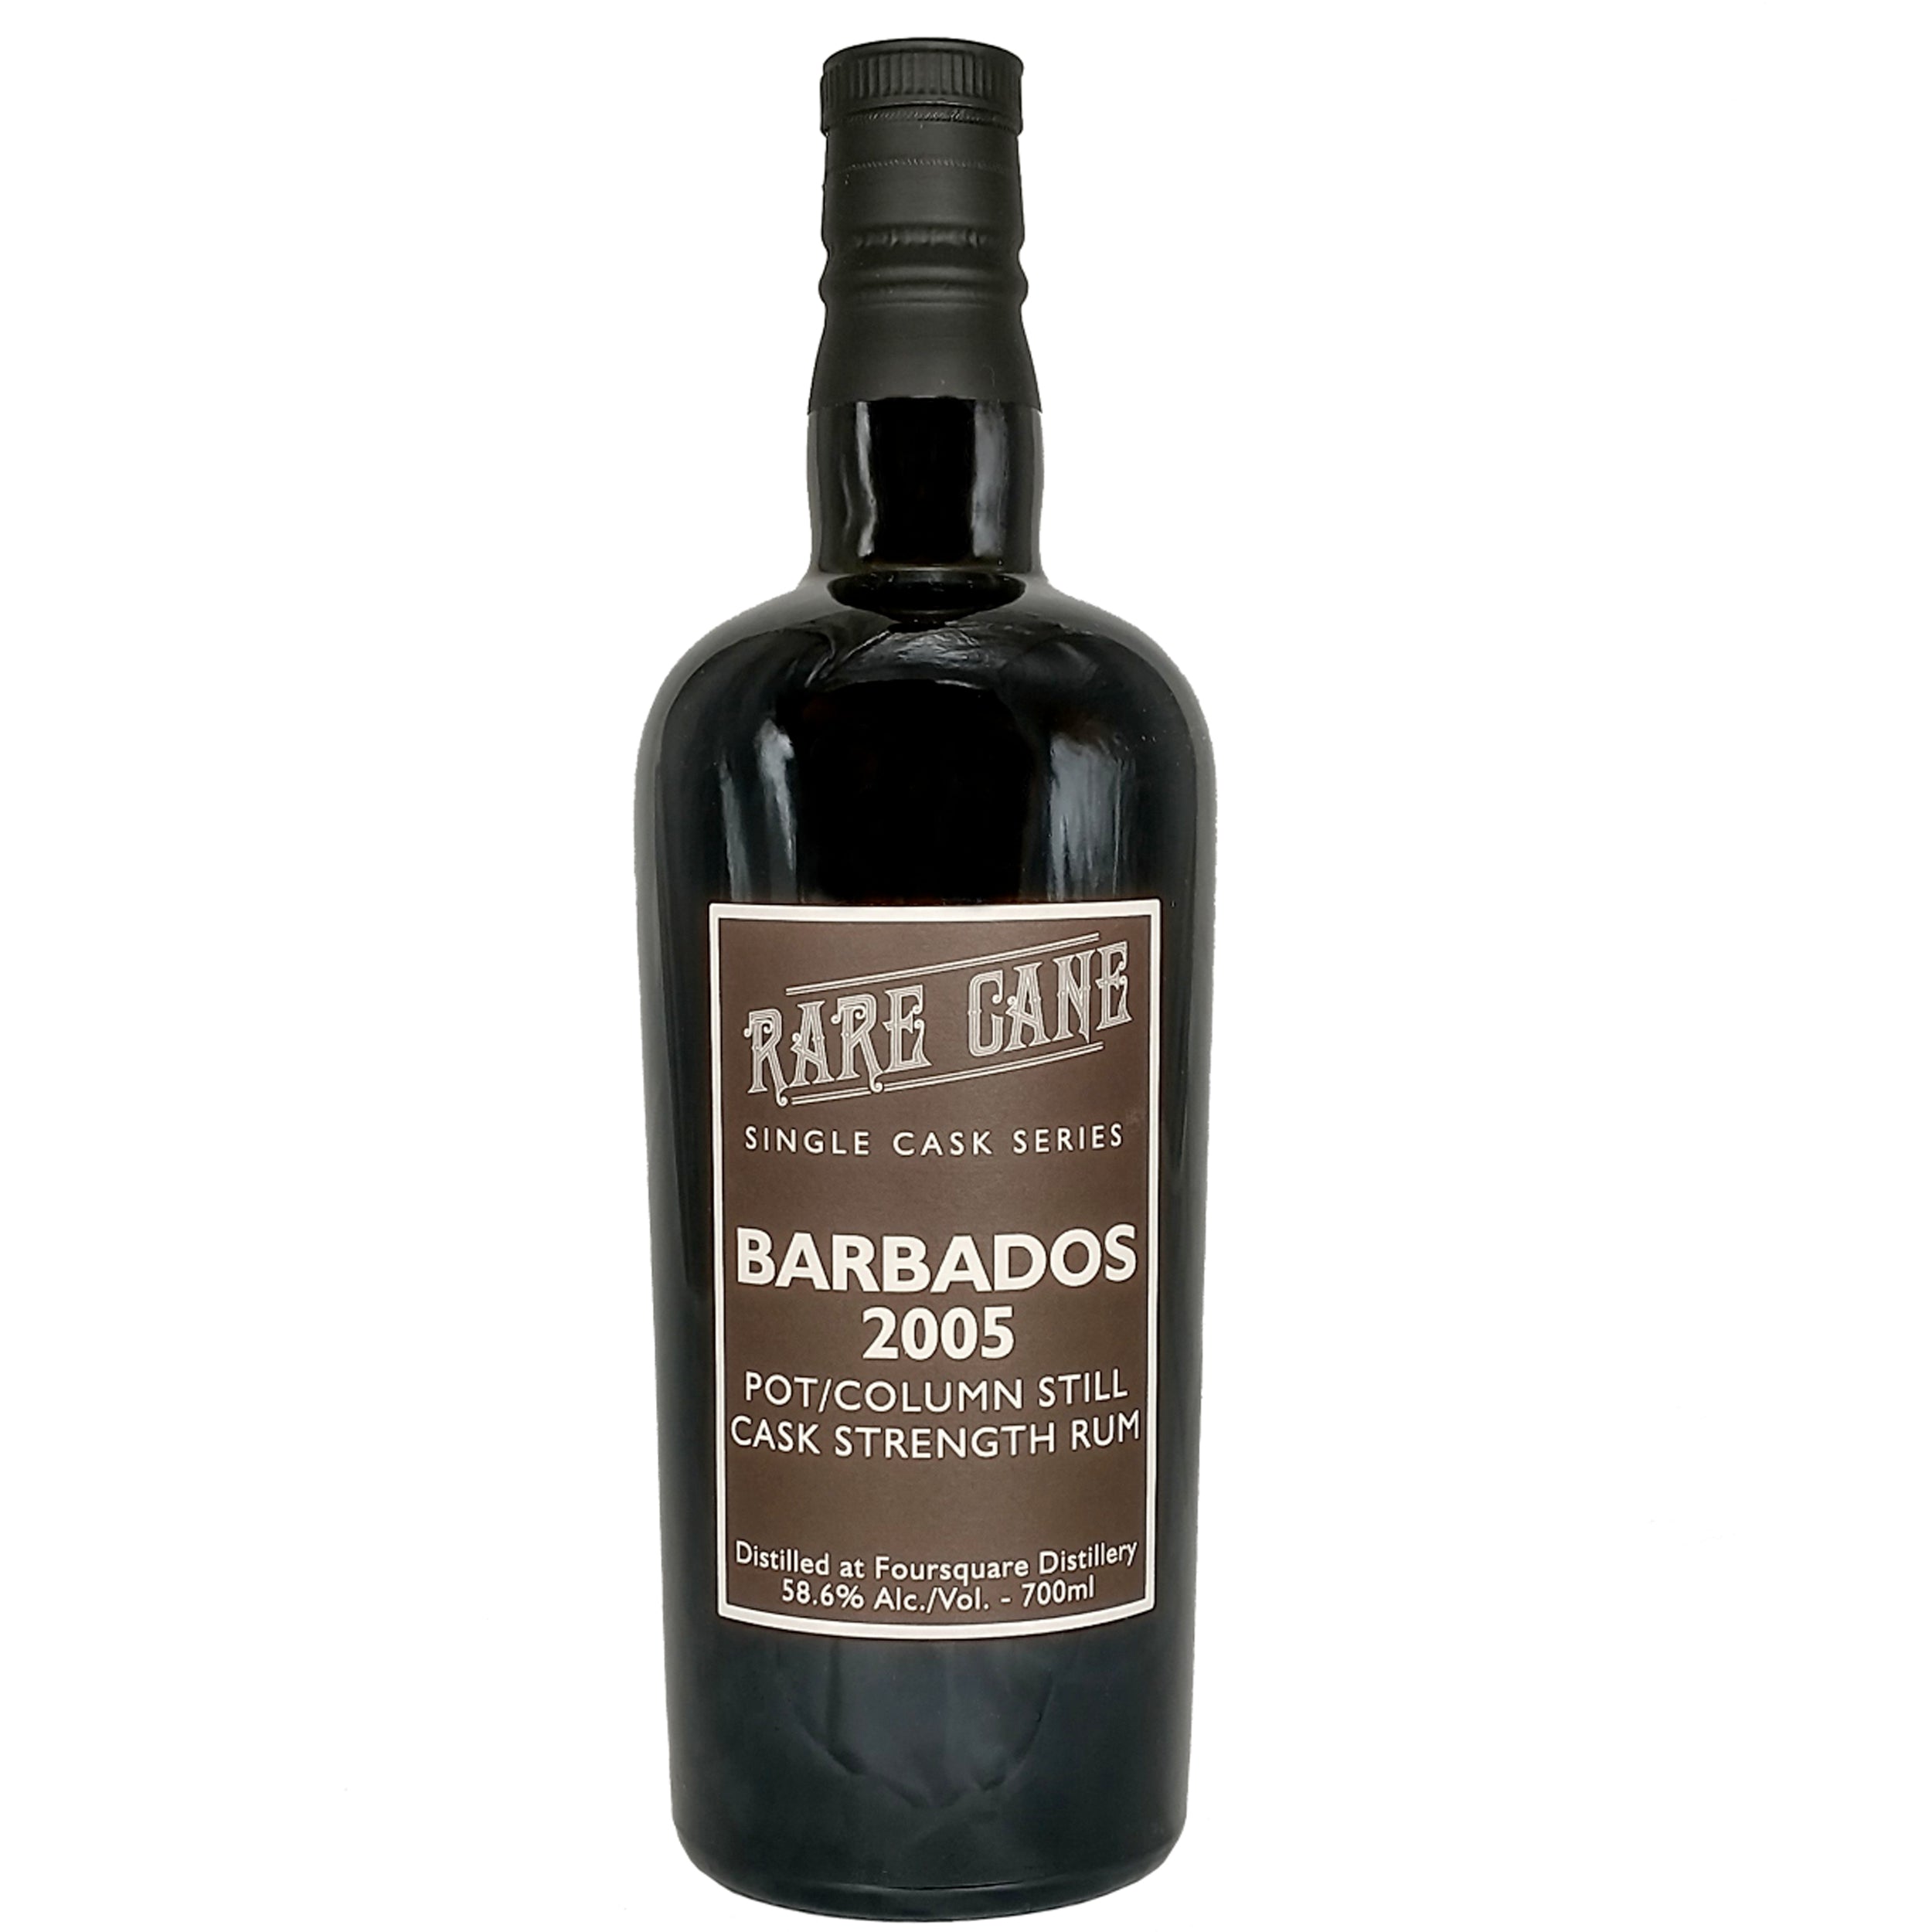 Rare Cane Single Cask Barbados 2005 Rum